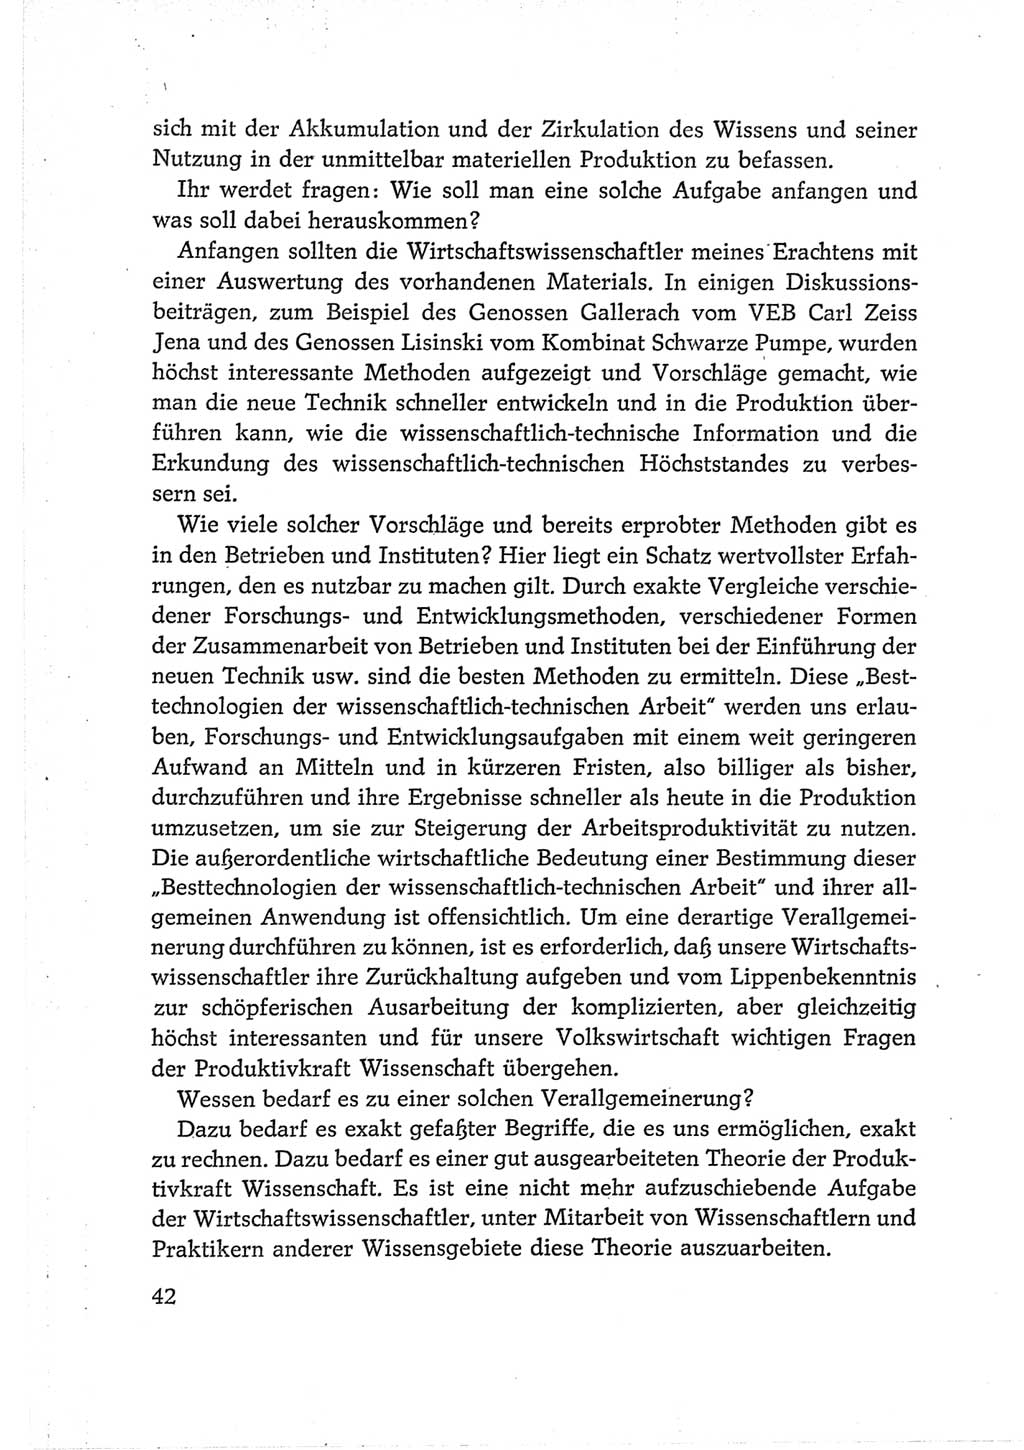 Protokoll der Verhandlungen des Ⅵ. Parteitages der Sozialistischen Einheitspartei Deutschlands (SED) [Deutsche Demokratische Republik (DDR)] 1963, Band Ⅱ, Seite 42 (Prot. Verh. Ⅵ. PT SED DDR 1963, Bd. Ⅱ, S. 42)